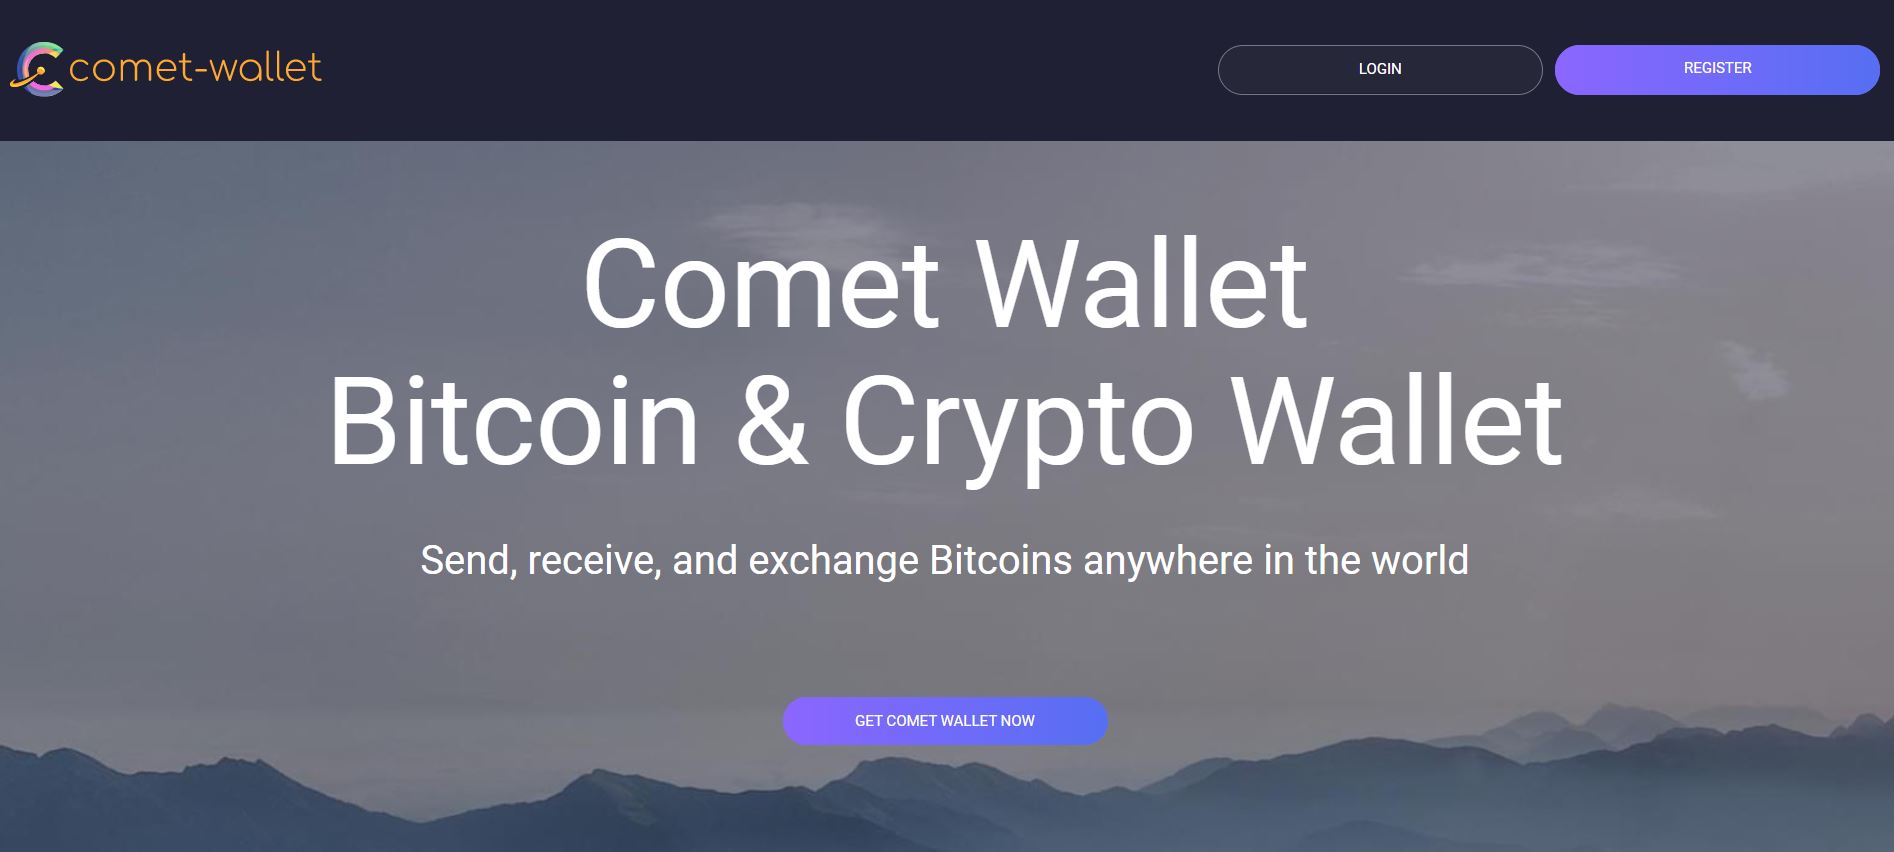 Comet Wallet